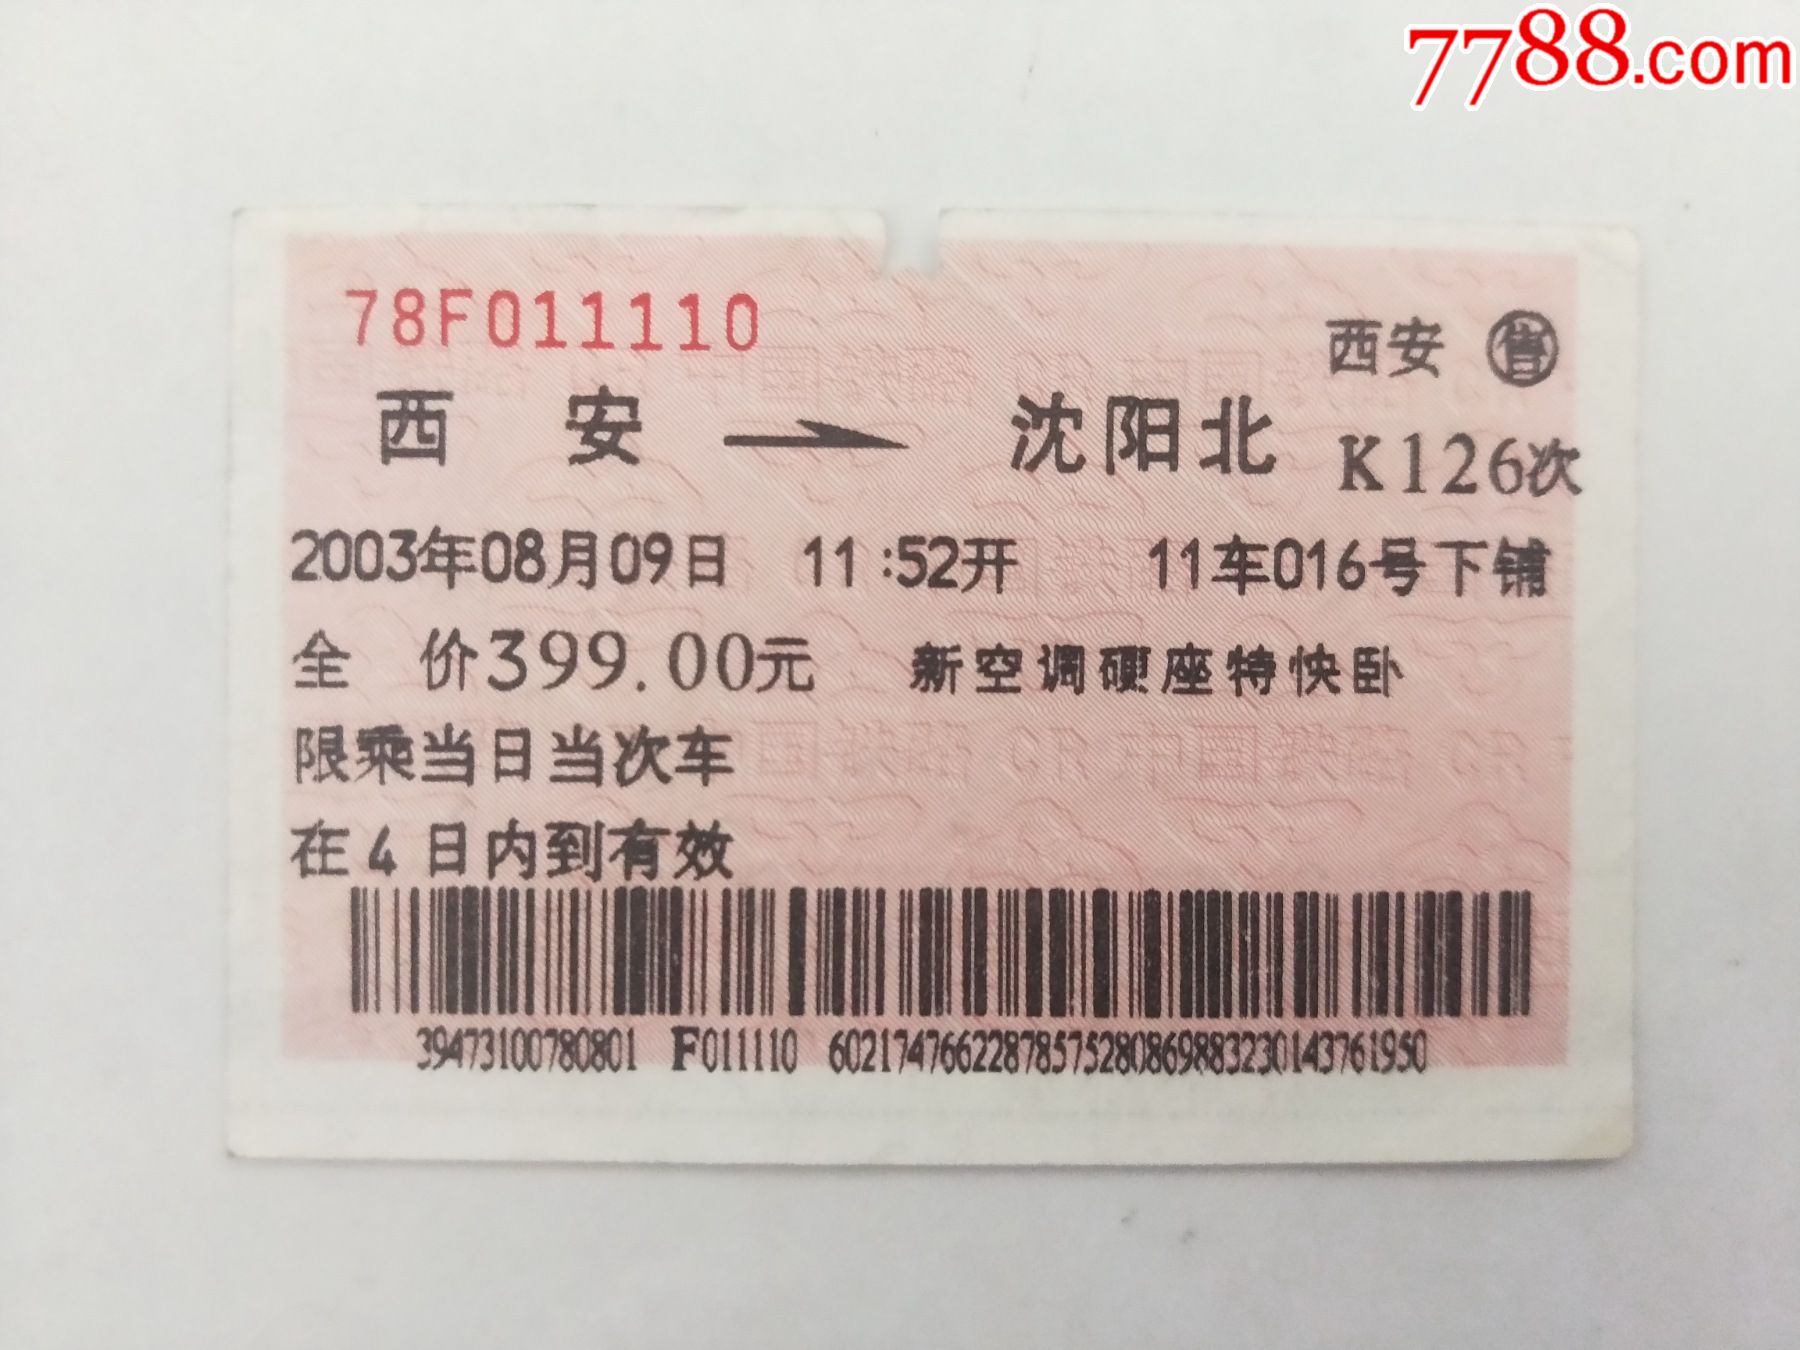 火车票:辽阳—沈阳，6301次，2007年_火车票_作品图片_收藏价格_7788纸艺